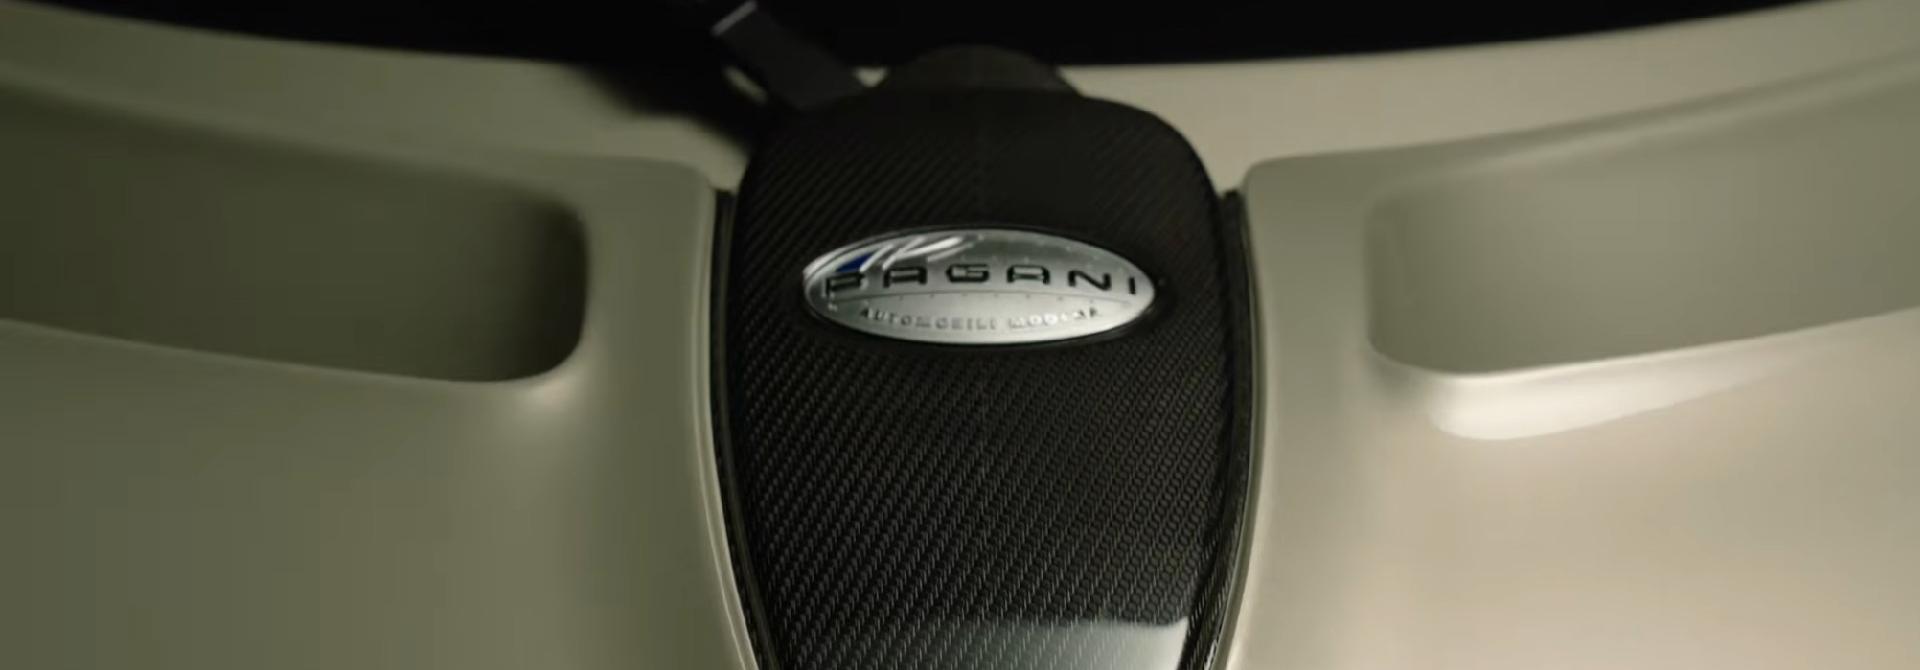 Siêu xe Pagani C10 lộ thêm chi tiết từ trong ra ngoài